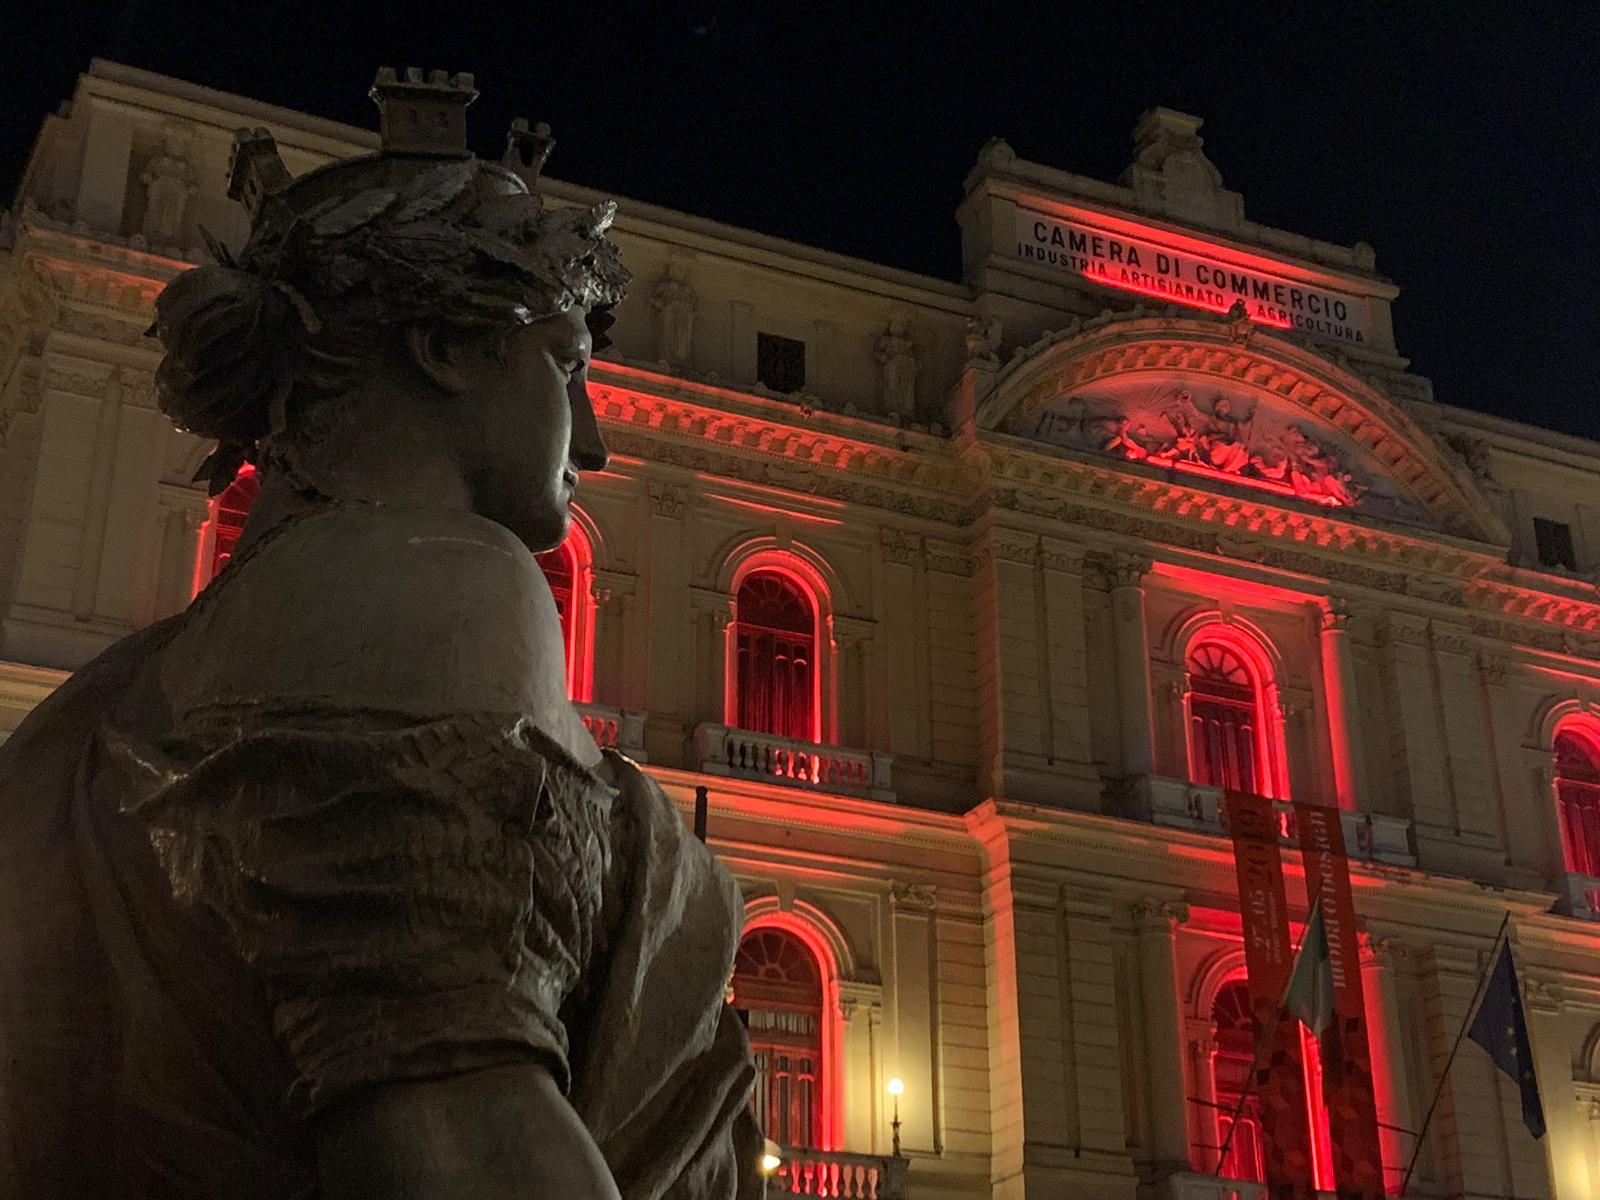 La Camera di Commercio si colora di rosso per la Giornata contro la Violenza sulle Donne